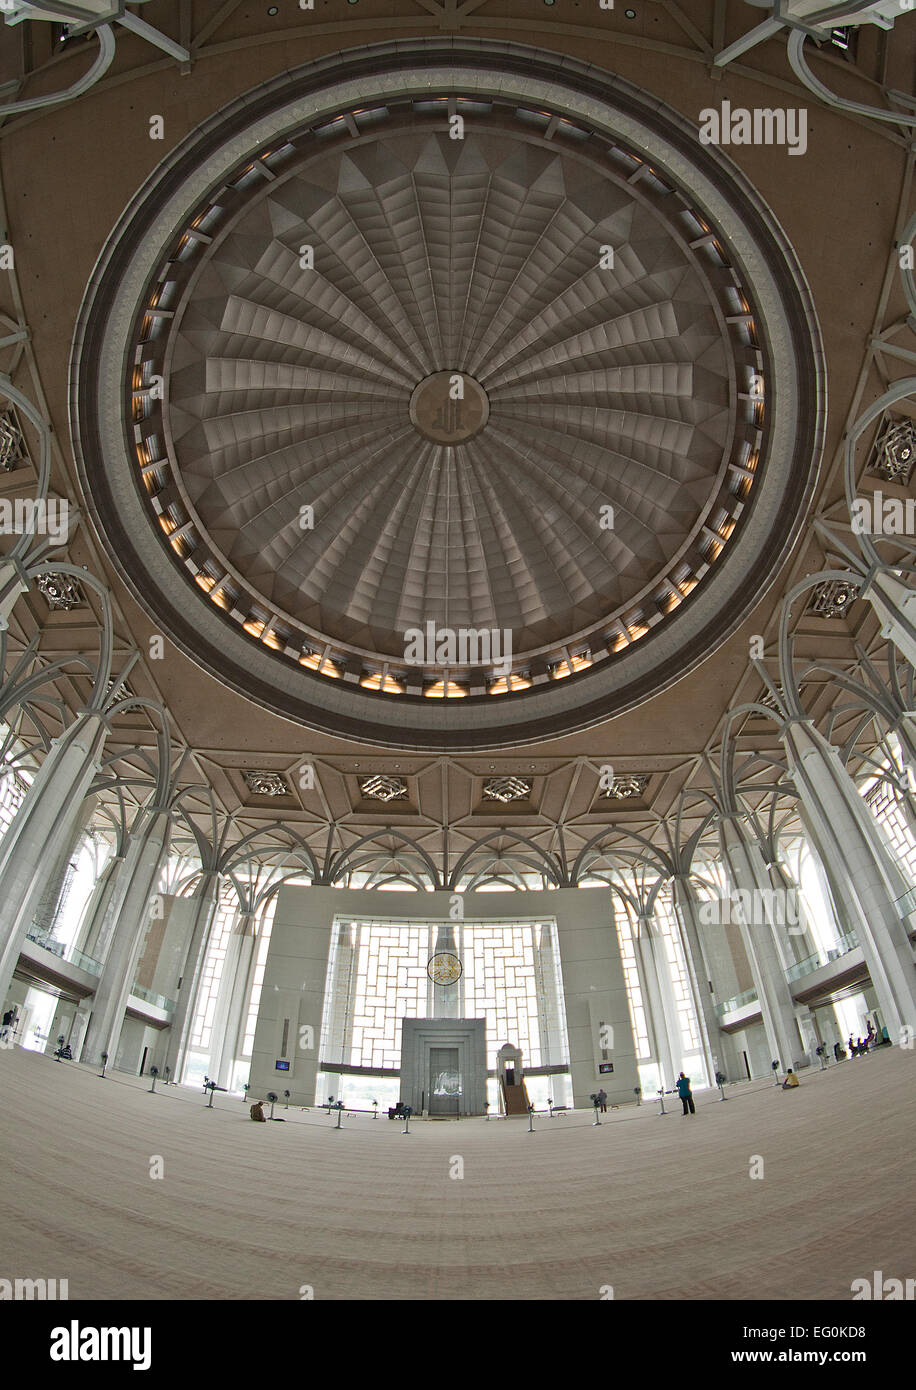 La Malaisie, Putrajaya, l'architecture en fer Mosque Banque D'Images